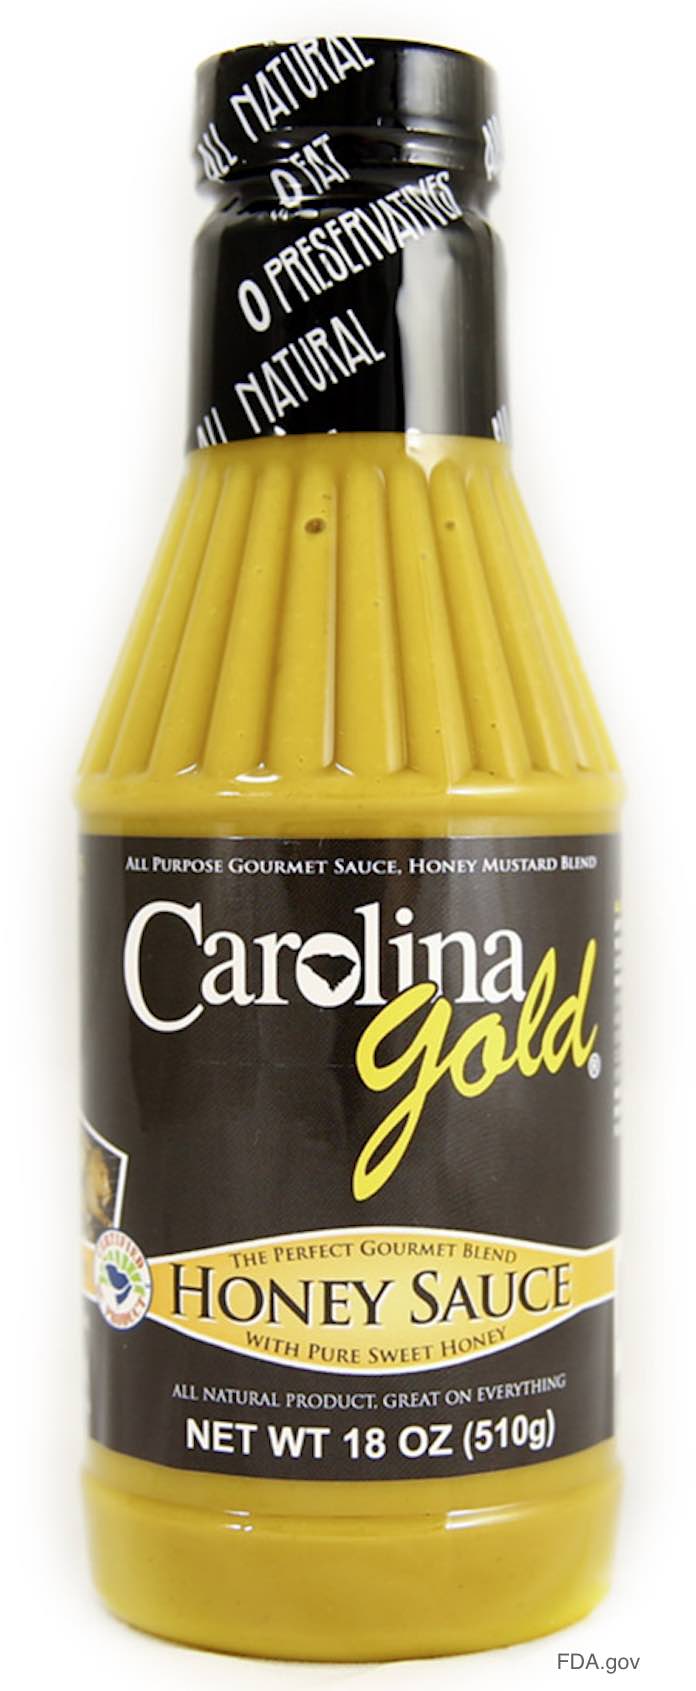 Carolina Gold Honey Sauce Recall